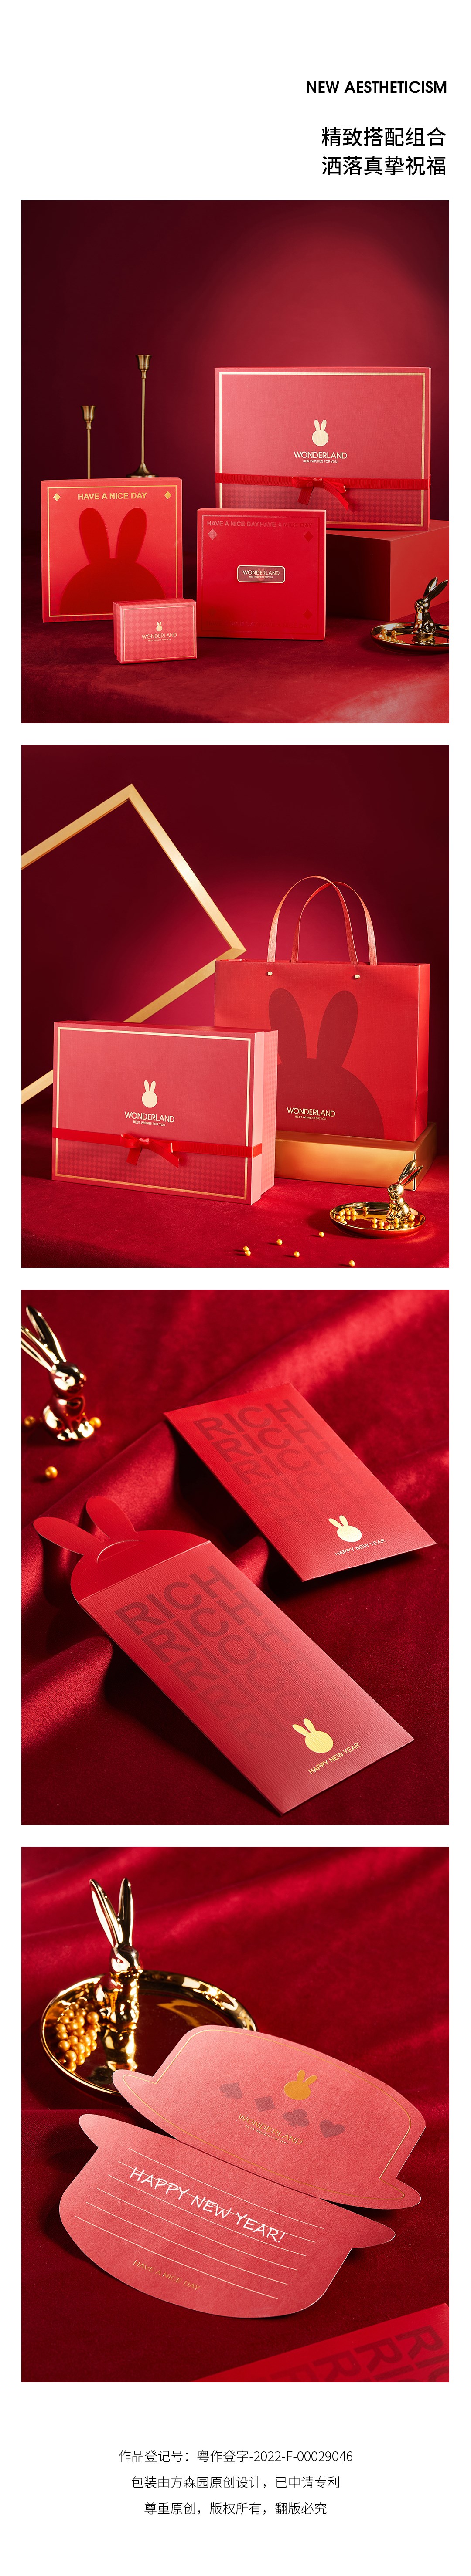 【方森园】新年年货礼盒包装设计——《奇境新年》